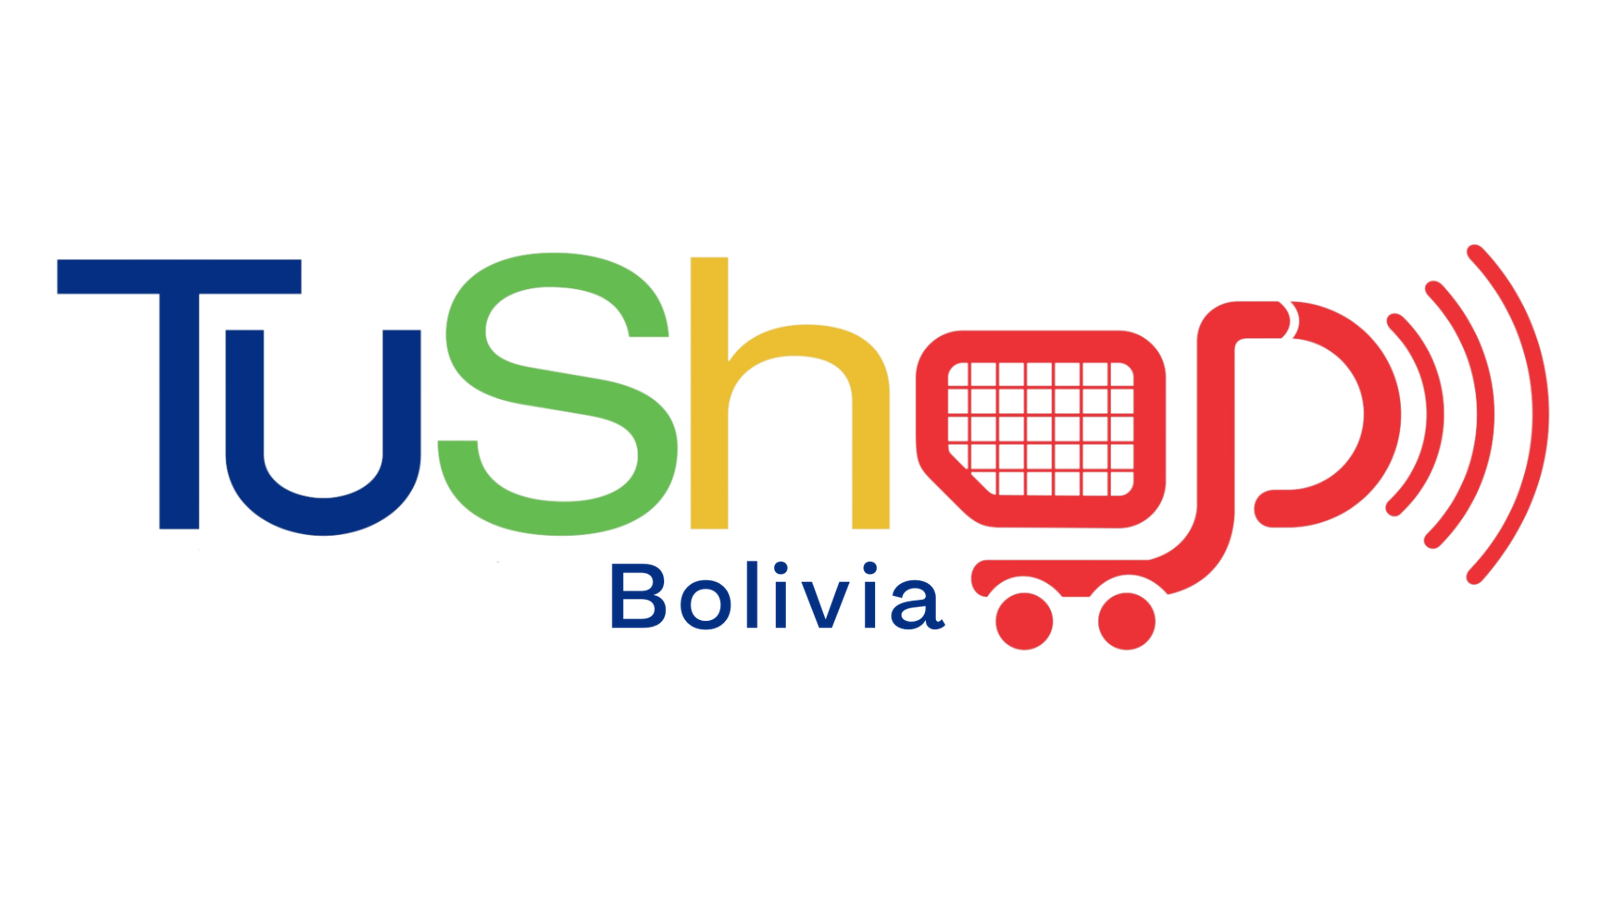 TuShop Bolivia